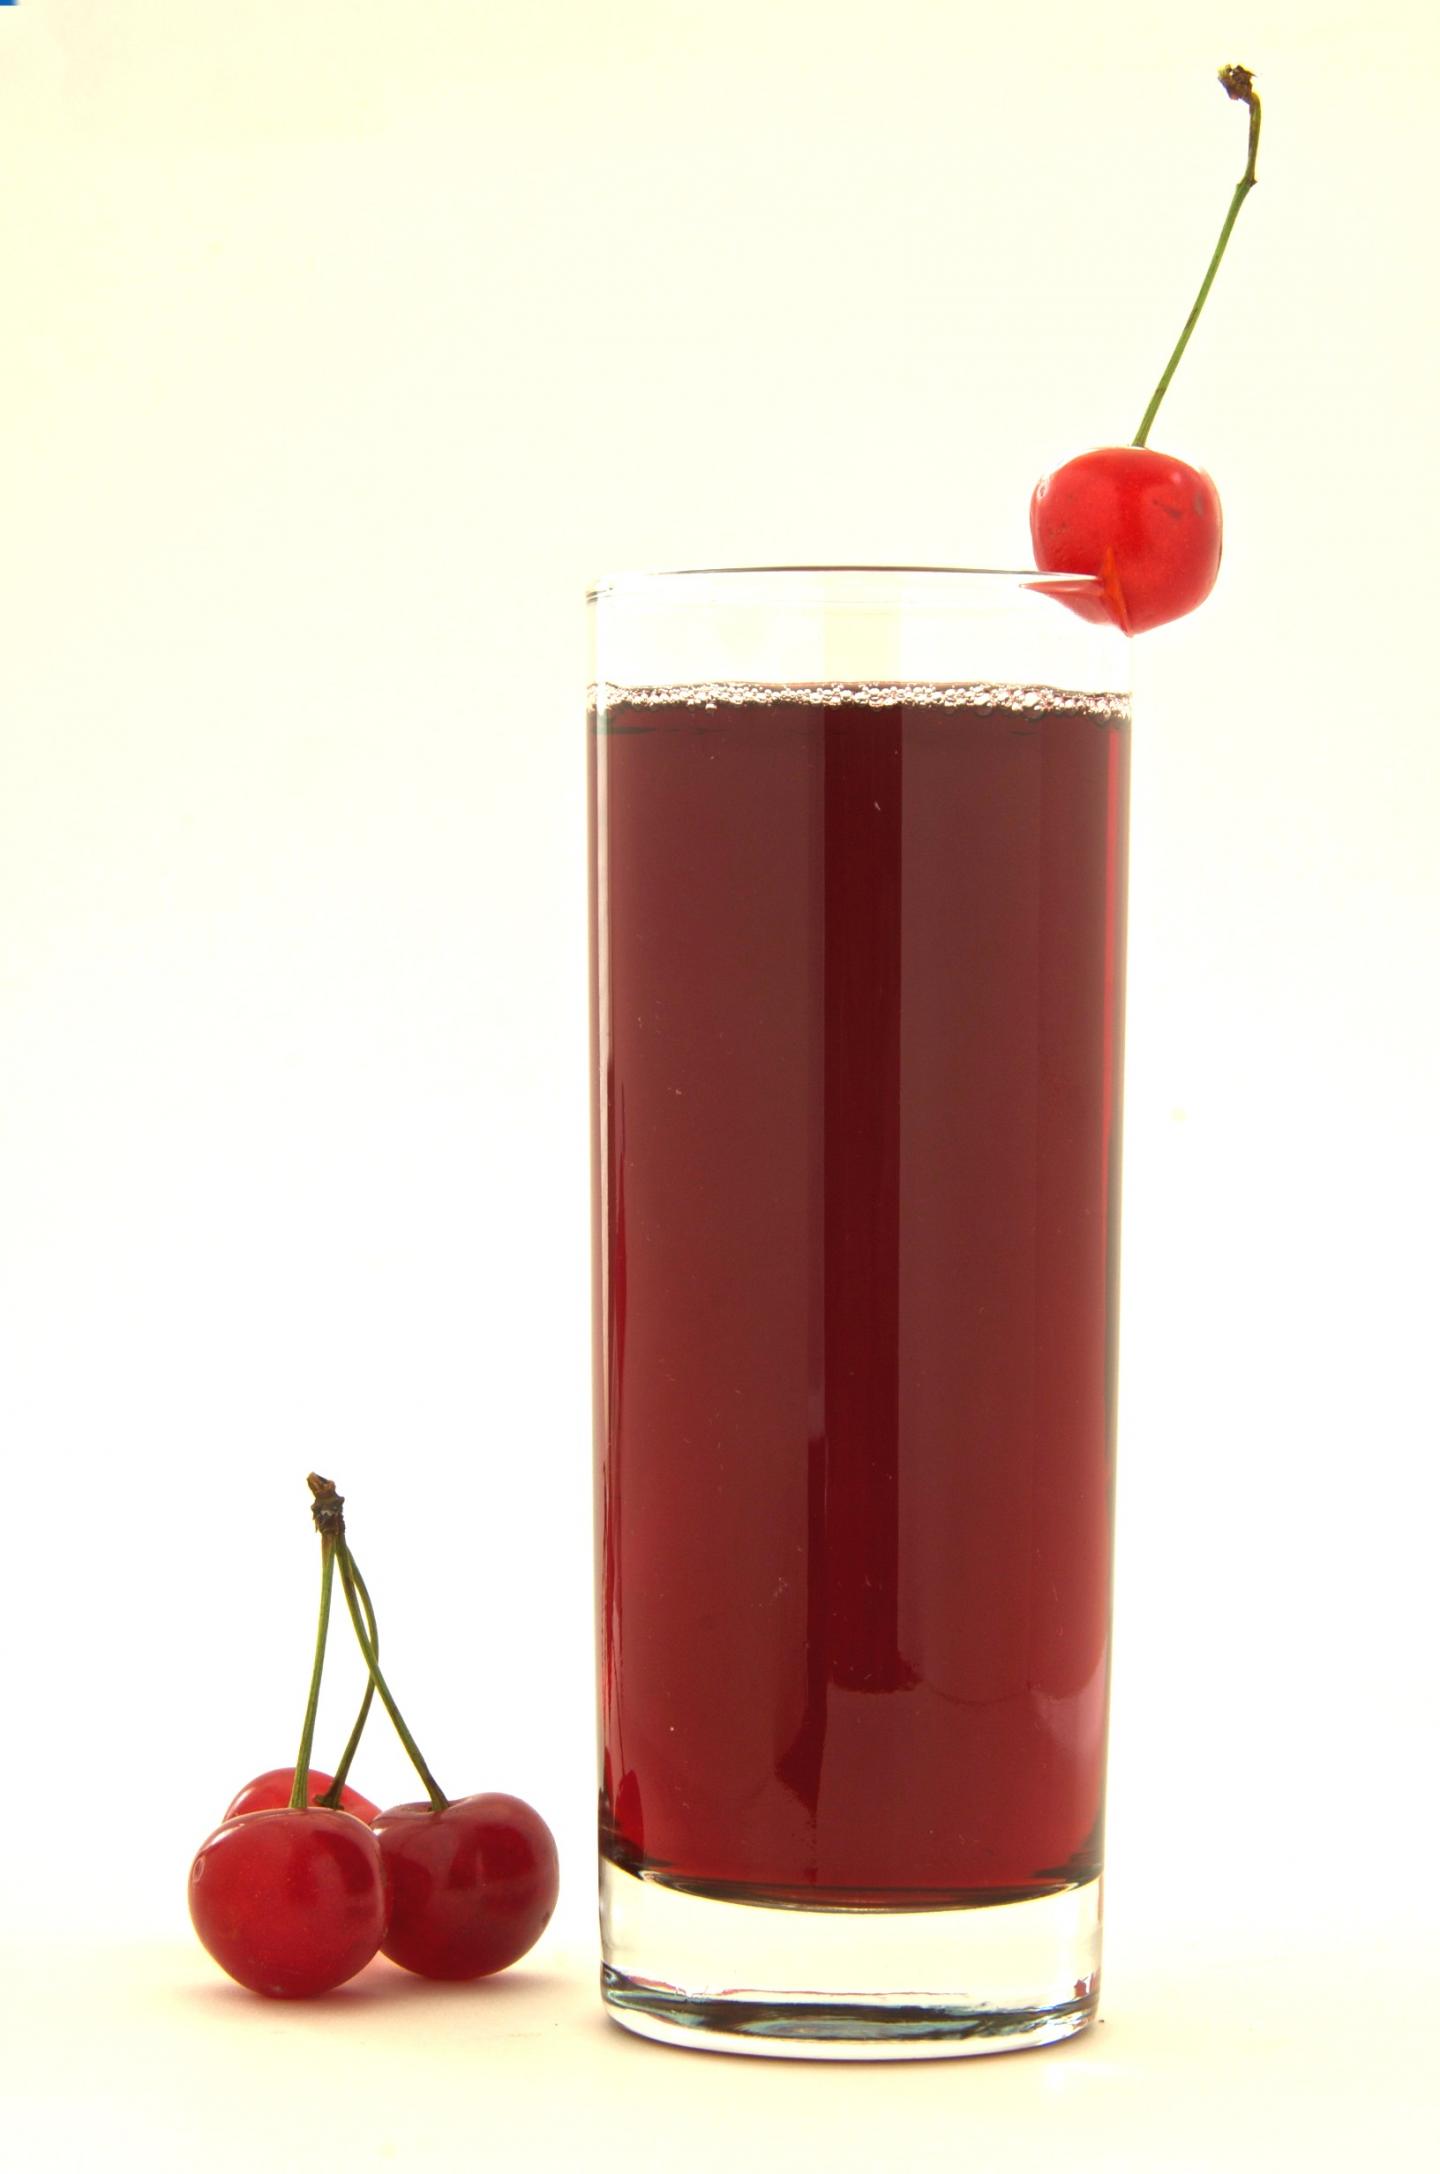 Montmorency Tart Cherry Juice